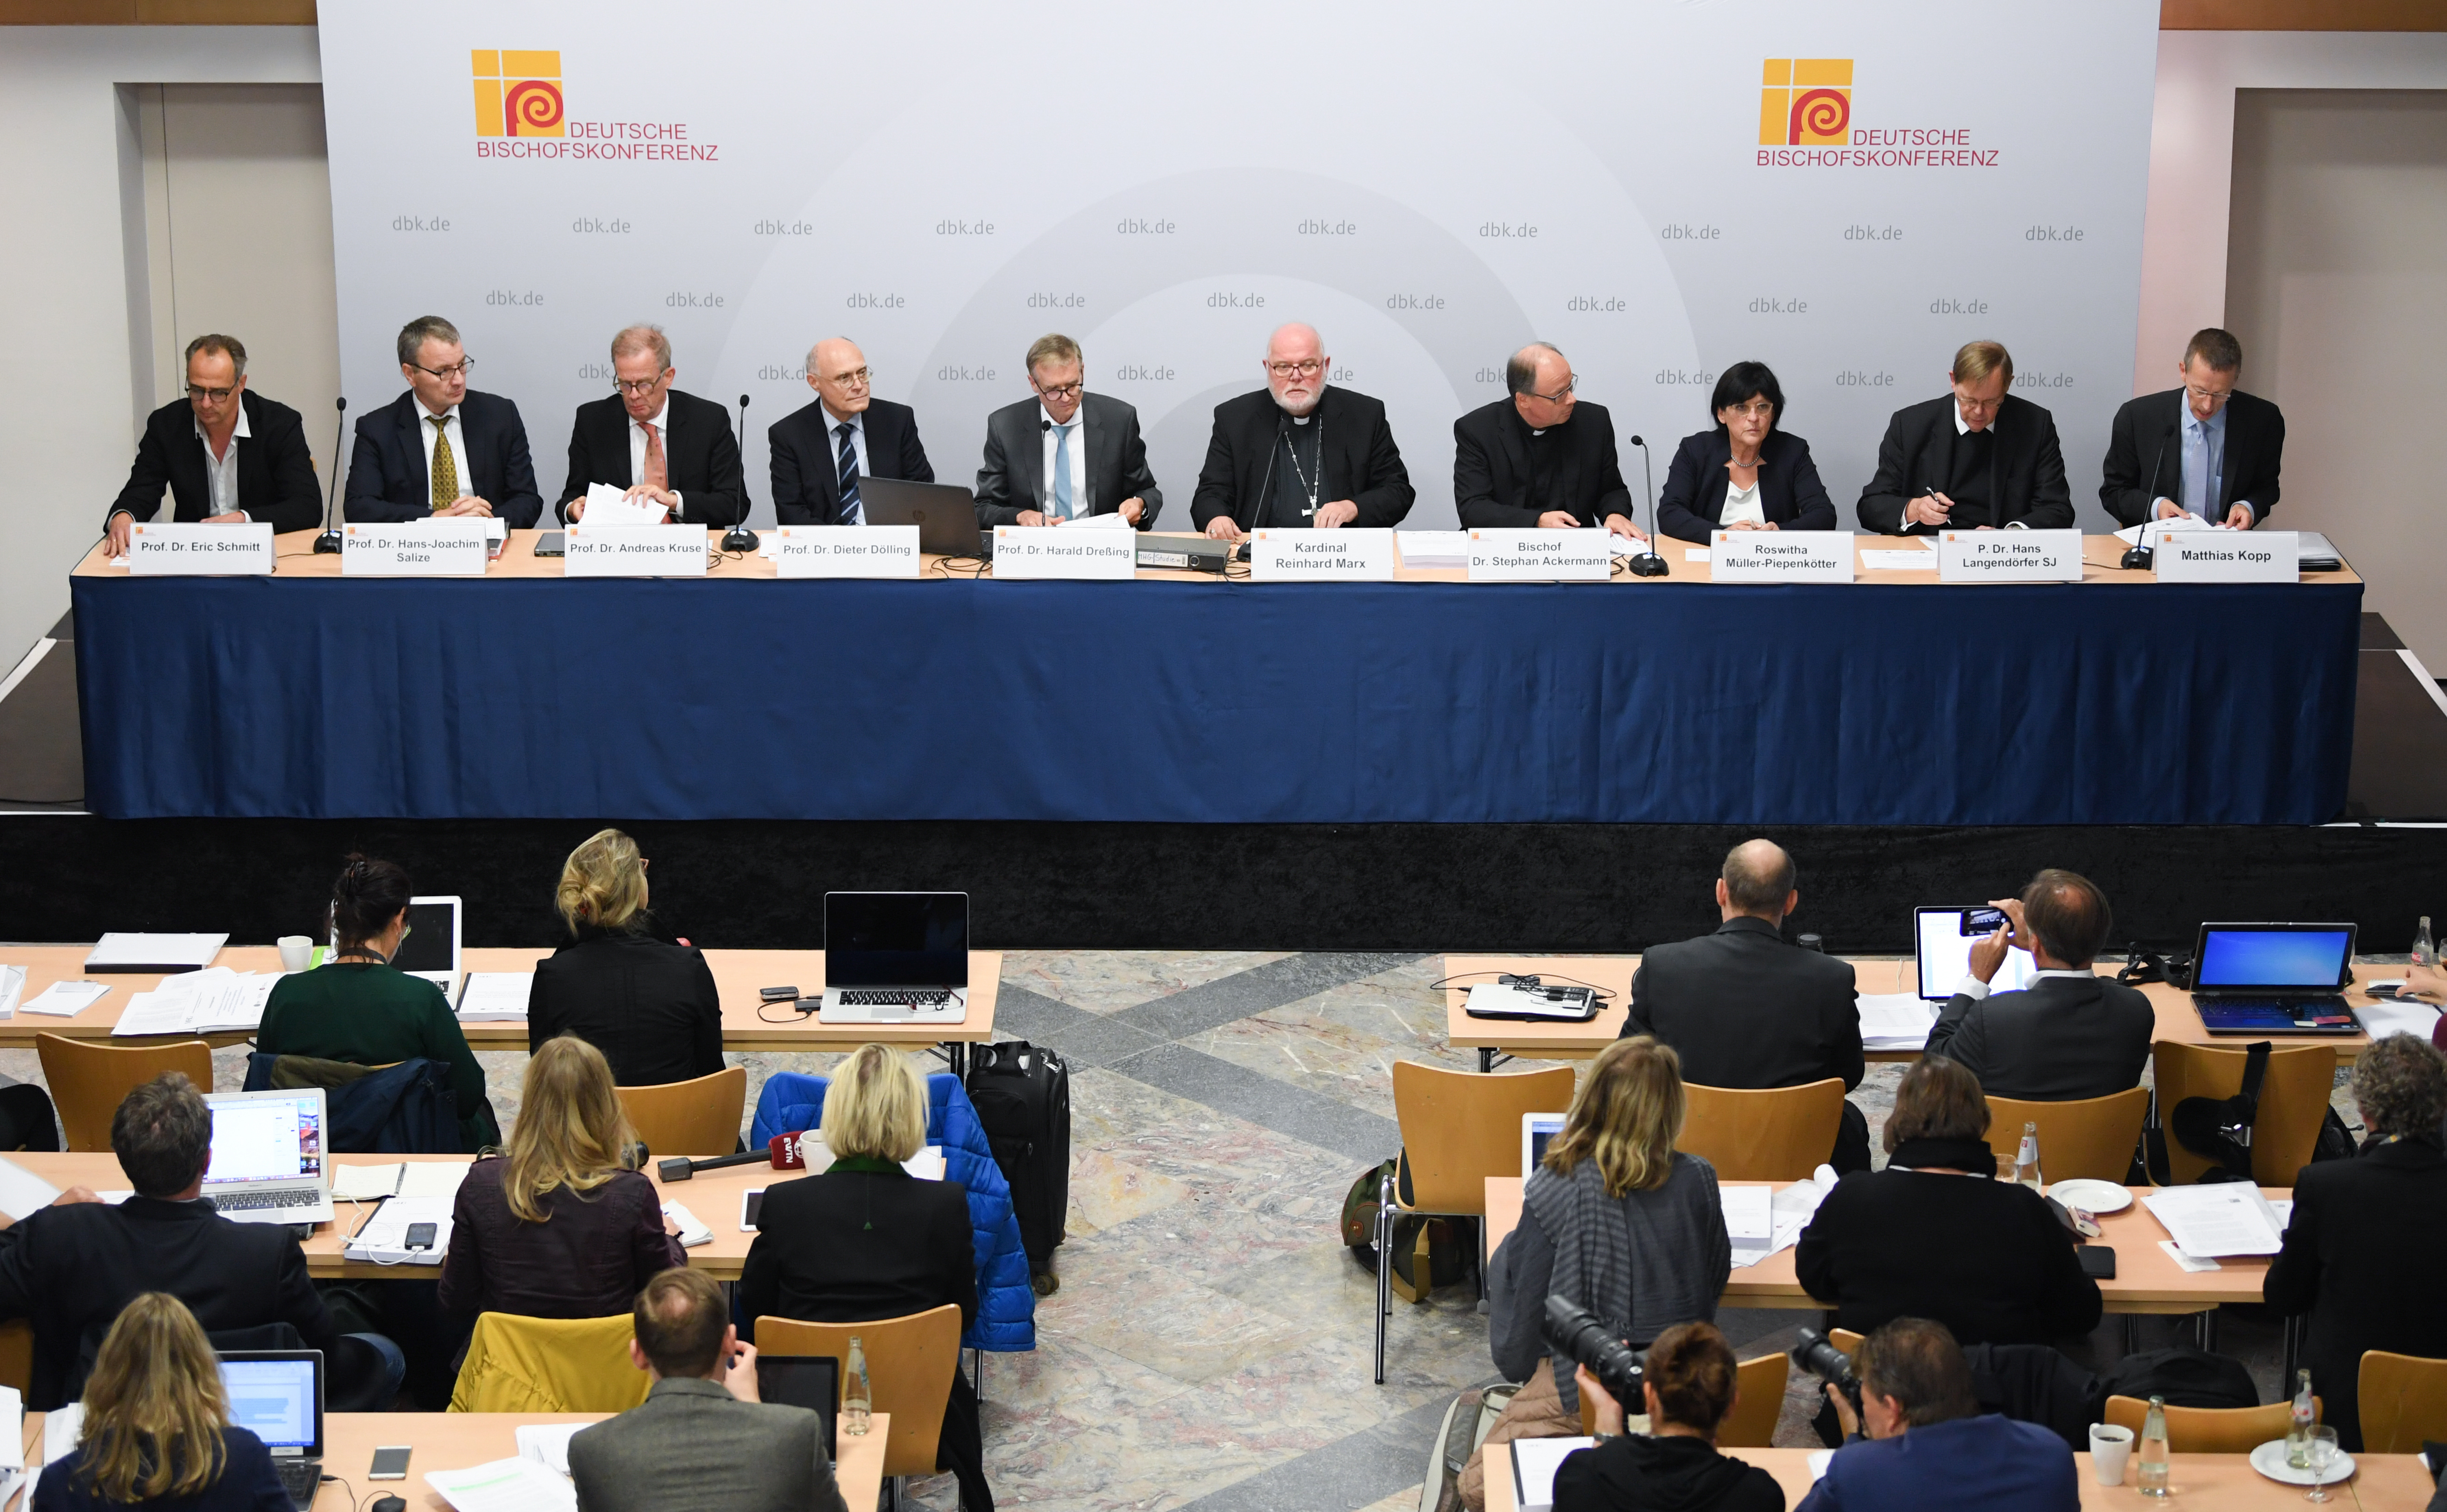 3677 szexuális erőszakot ismert el a német püspöki konferencia